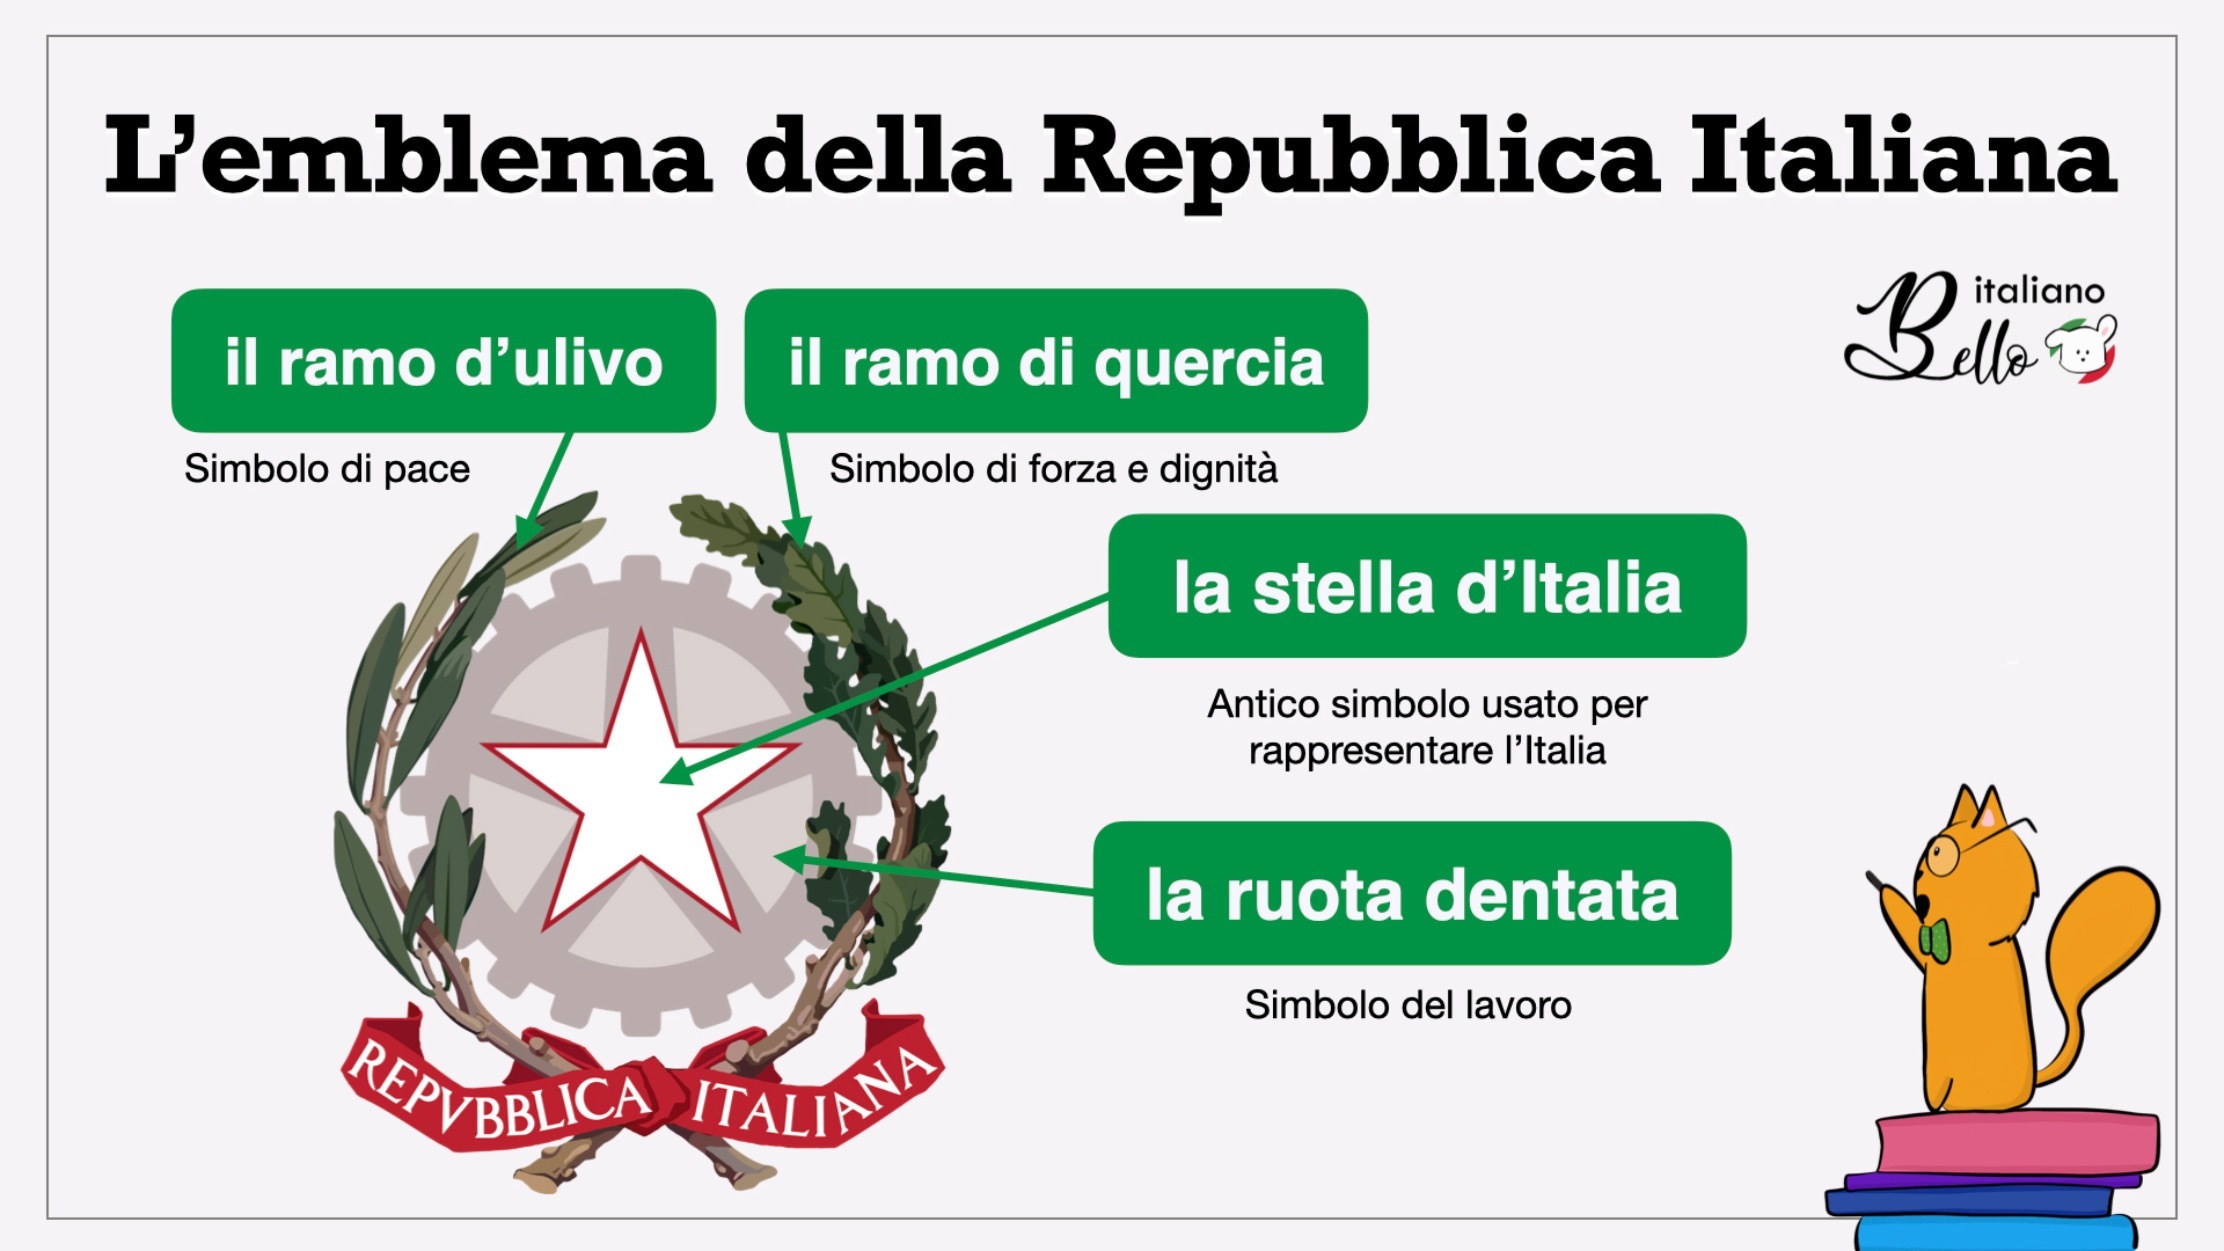 Emblema della Repubblica italiana